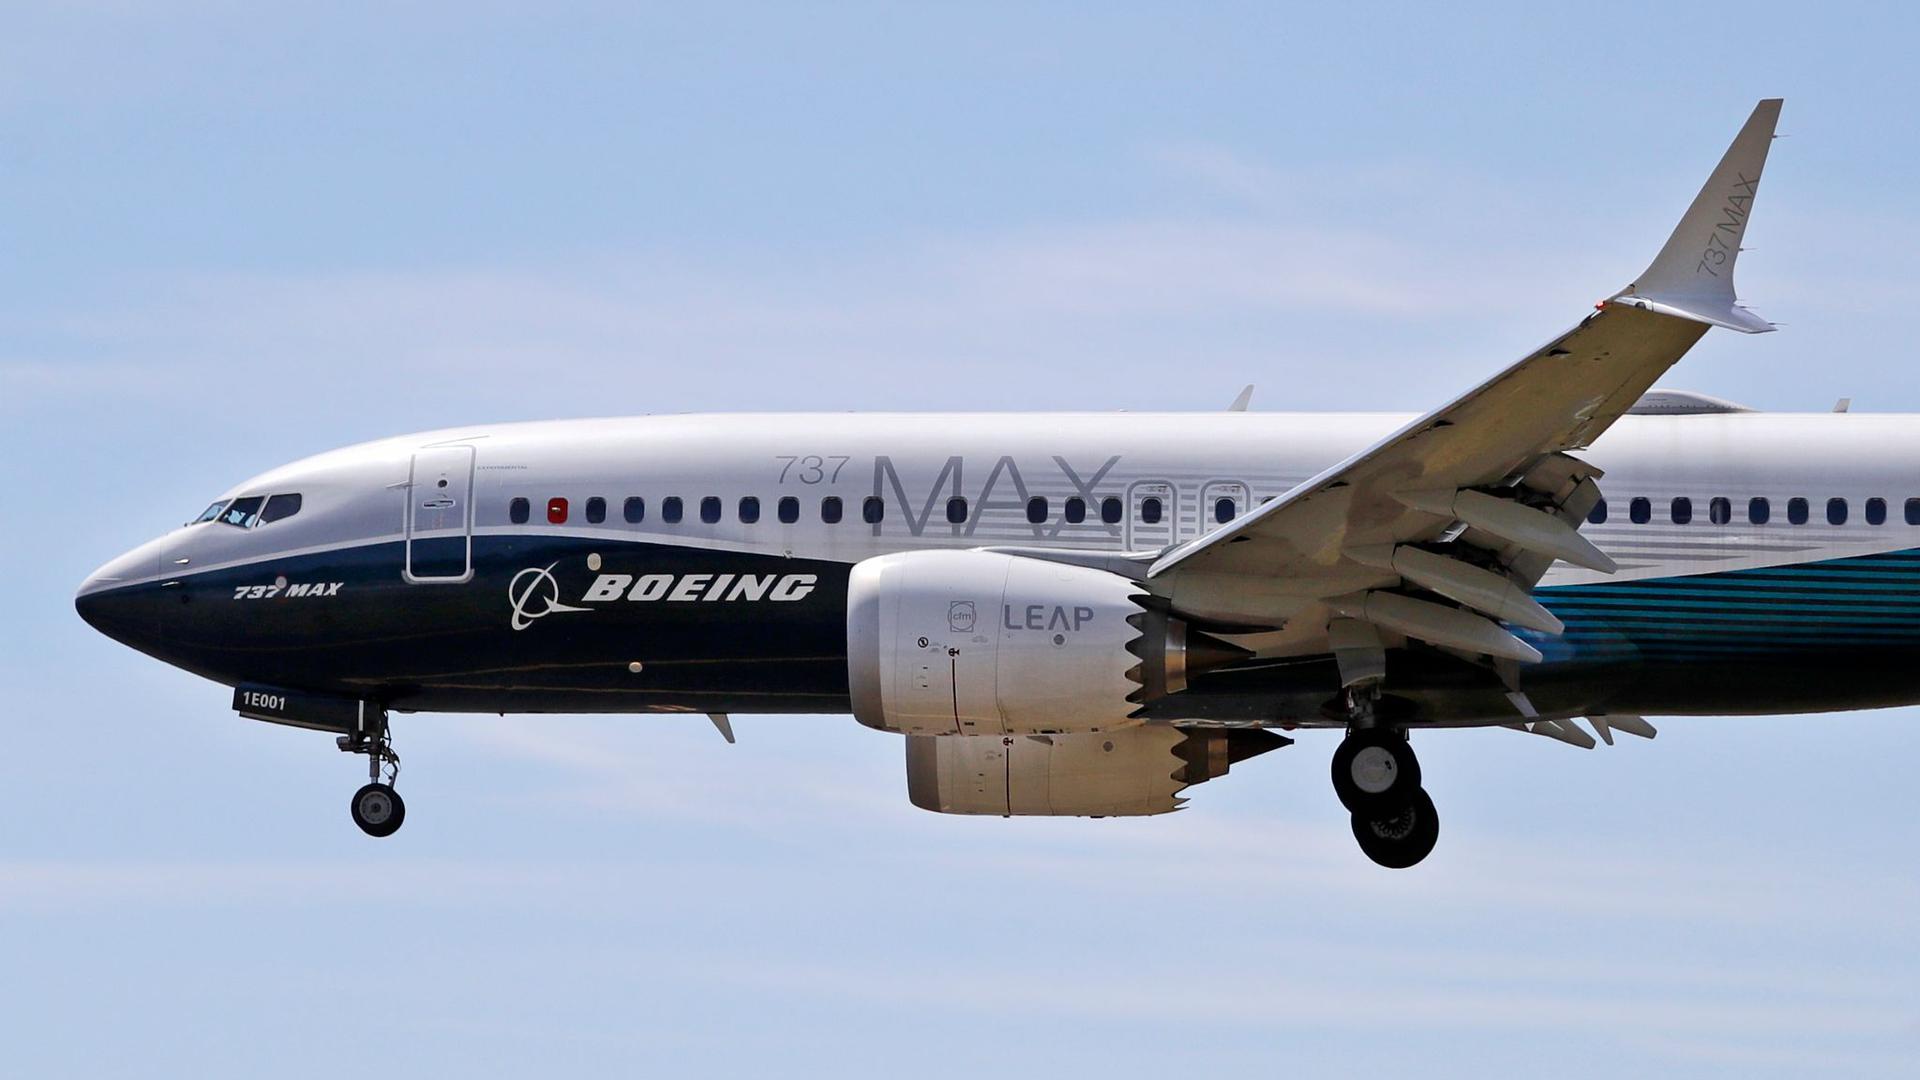 Ein Flugzeug vom Typ Boeing 737 Max befindet sich im Landeanflug.